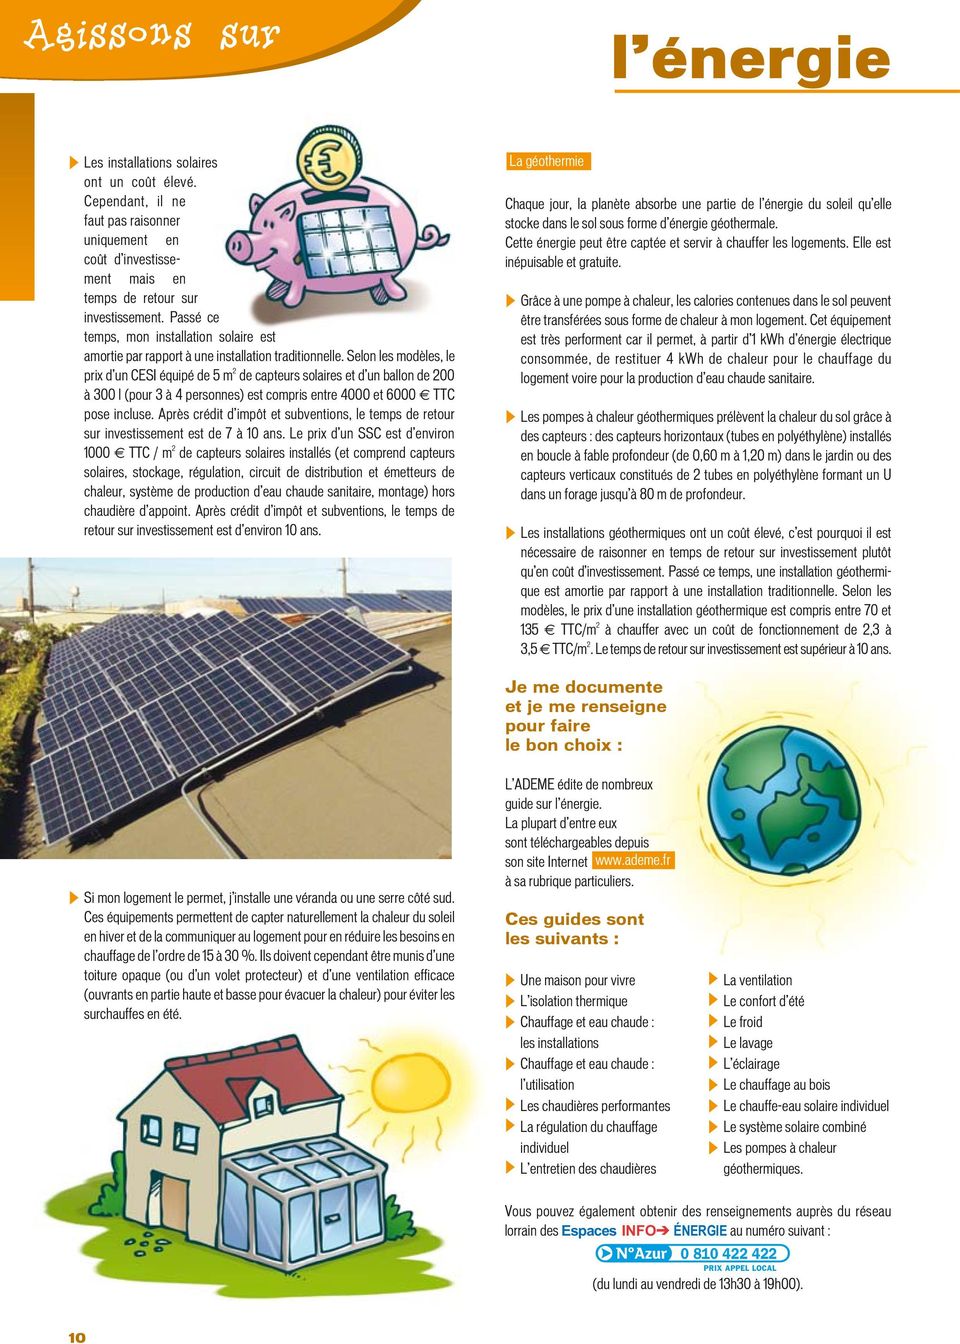 Selon les modèles, le prix d un CESI équipé de 5 m 2 de capteurs solaires et d un ballon de 200 à 300 l (pour 3 à 4 personnes) est compris entre 4000 et 6000 TTC pose incluse.